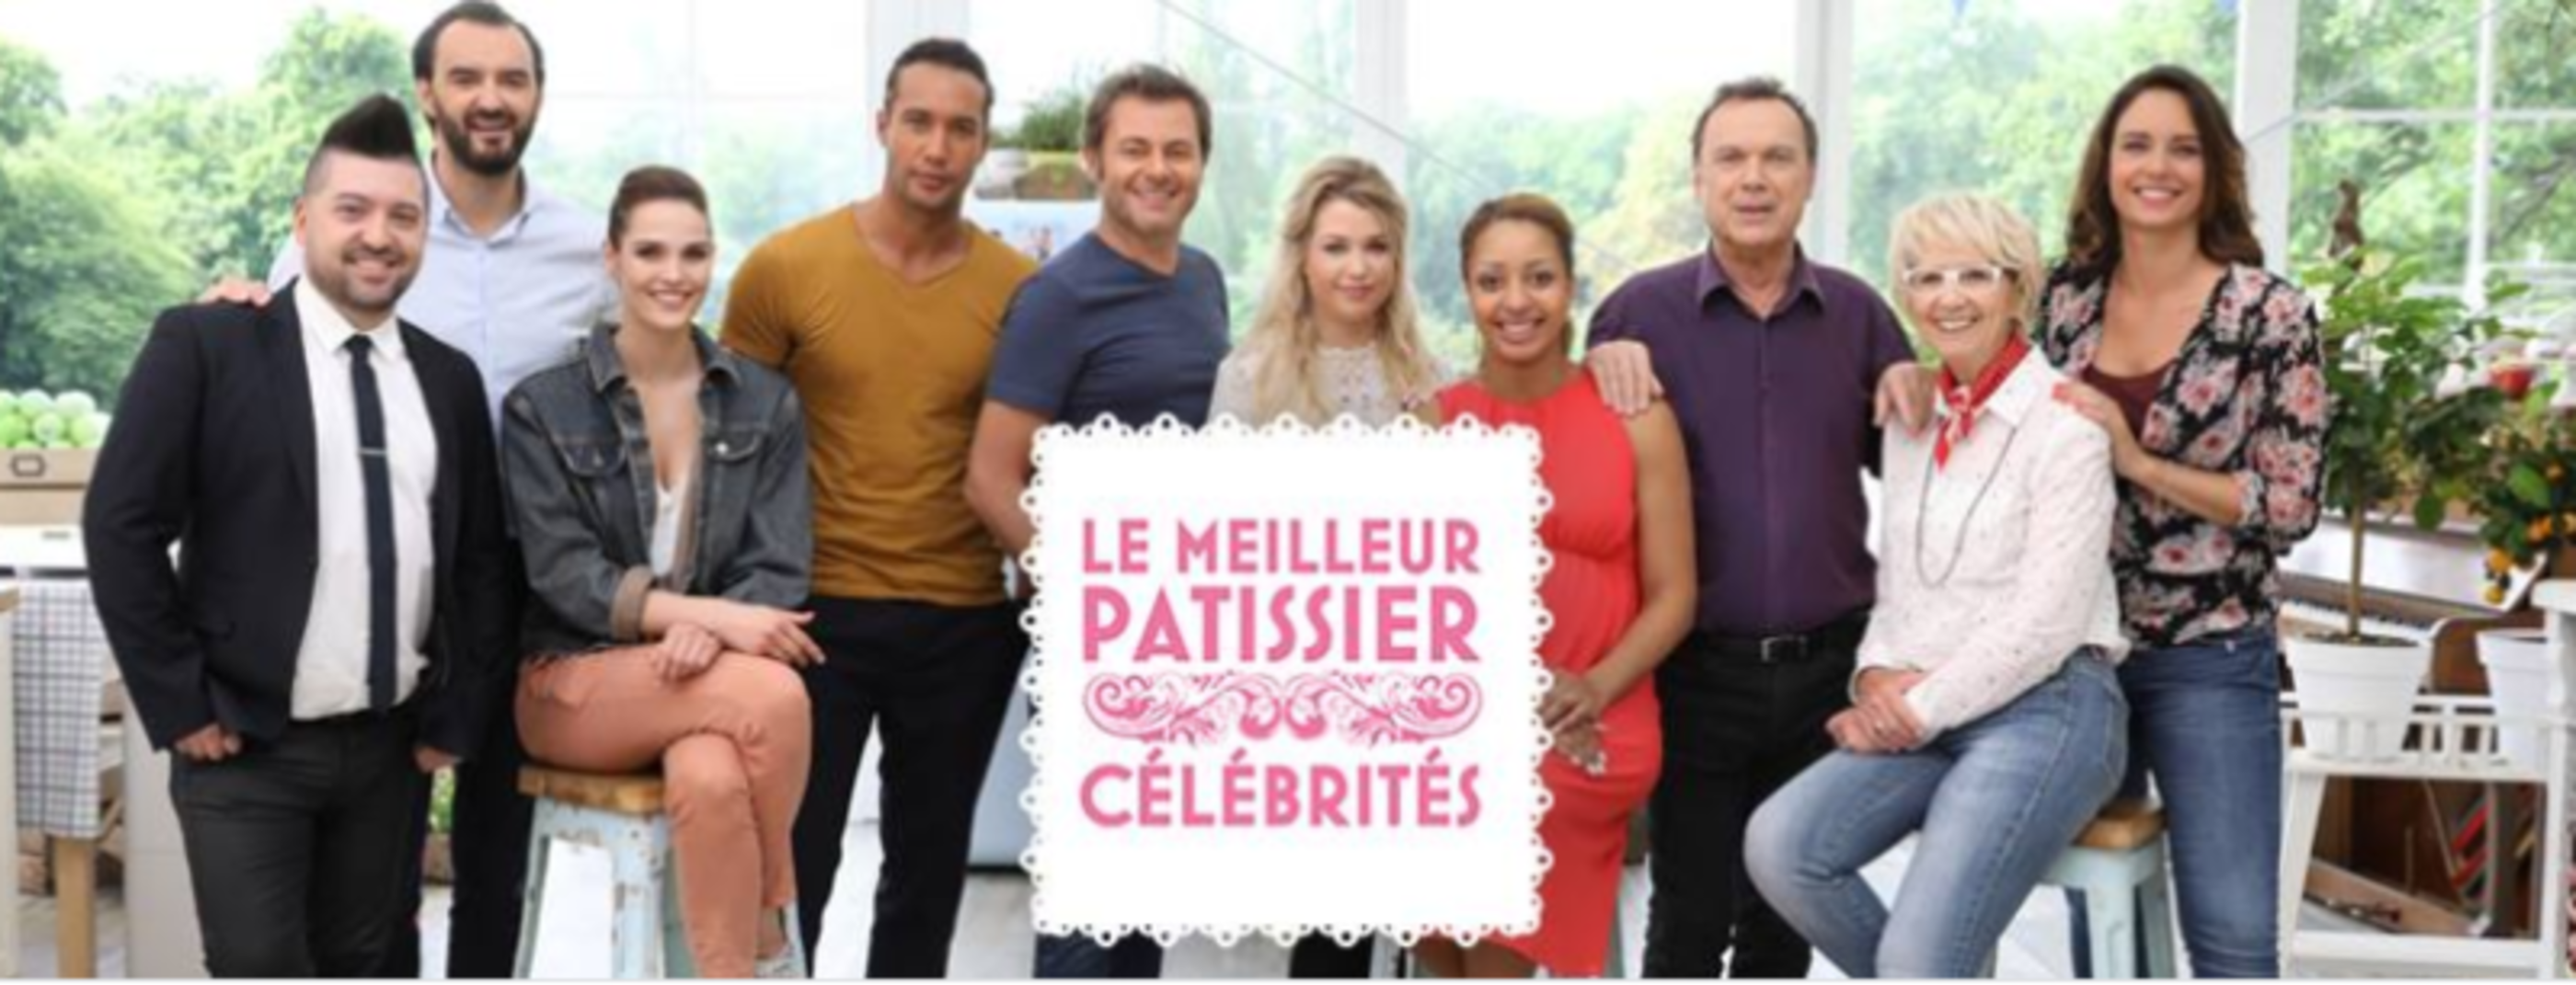 Jean Dubost partenaire officiel de l'émission culinaire Le meilleur pâtissier spécial Célébrités sur M6